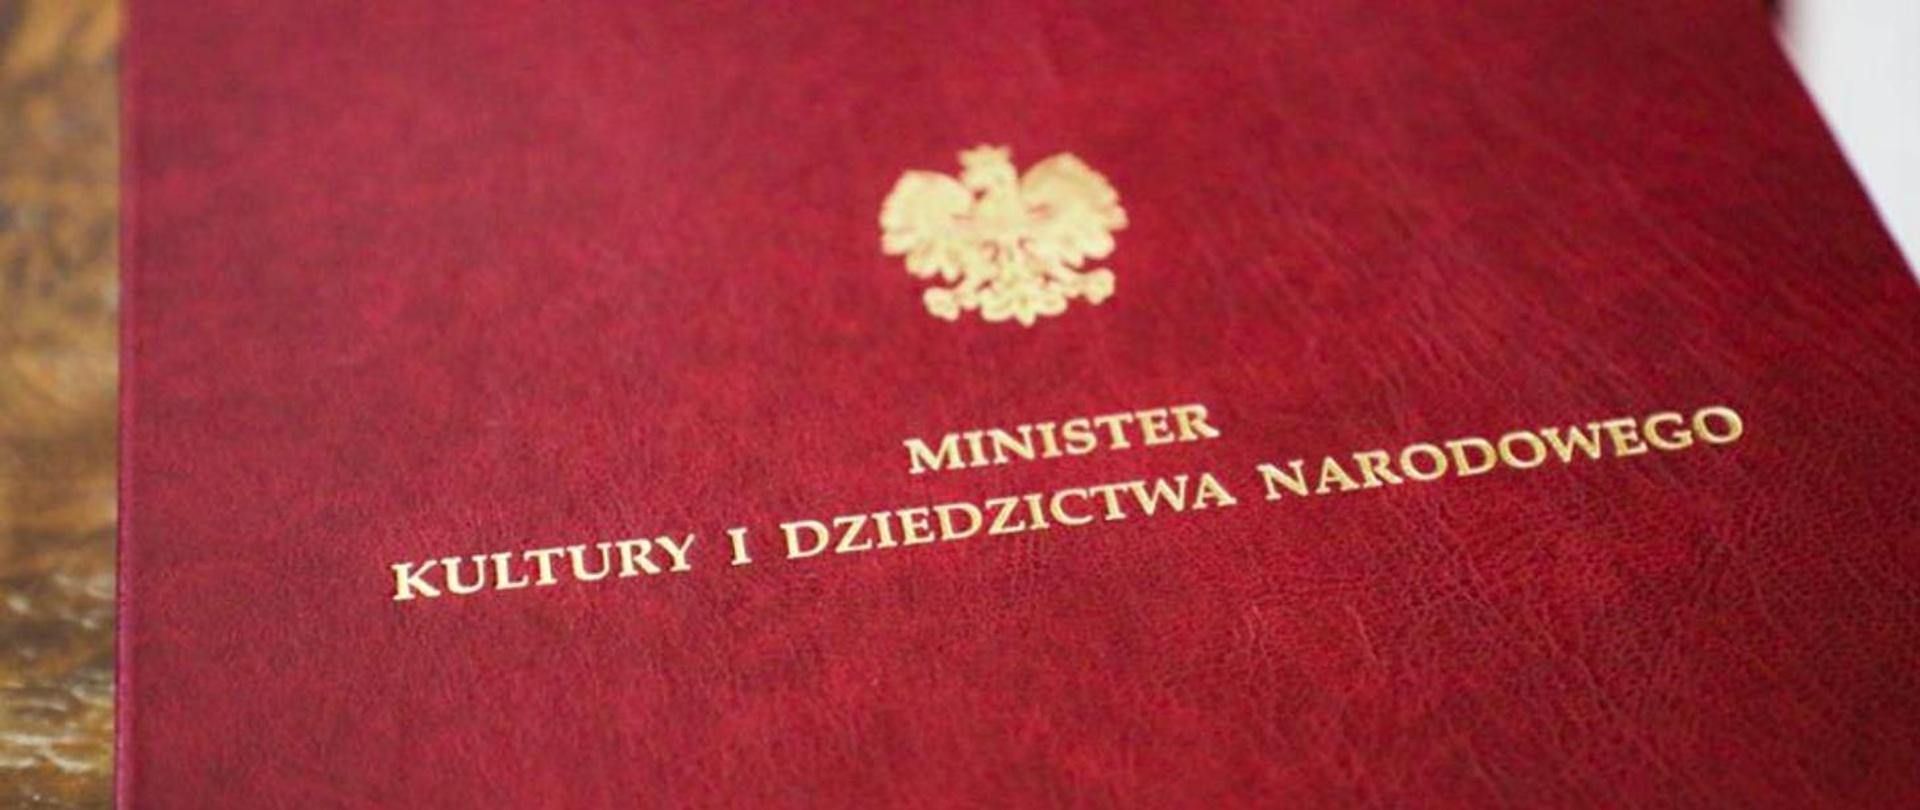 Zdjęcie przedstawia teczkę z godłem i napisem "Minister Kultury i Dziedzictwa Narodowego"